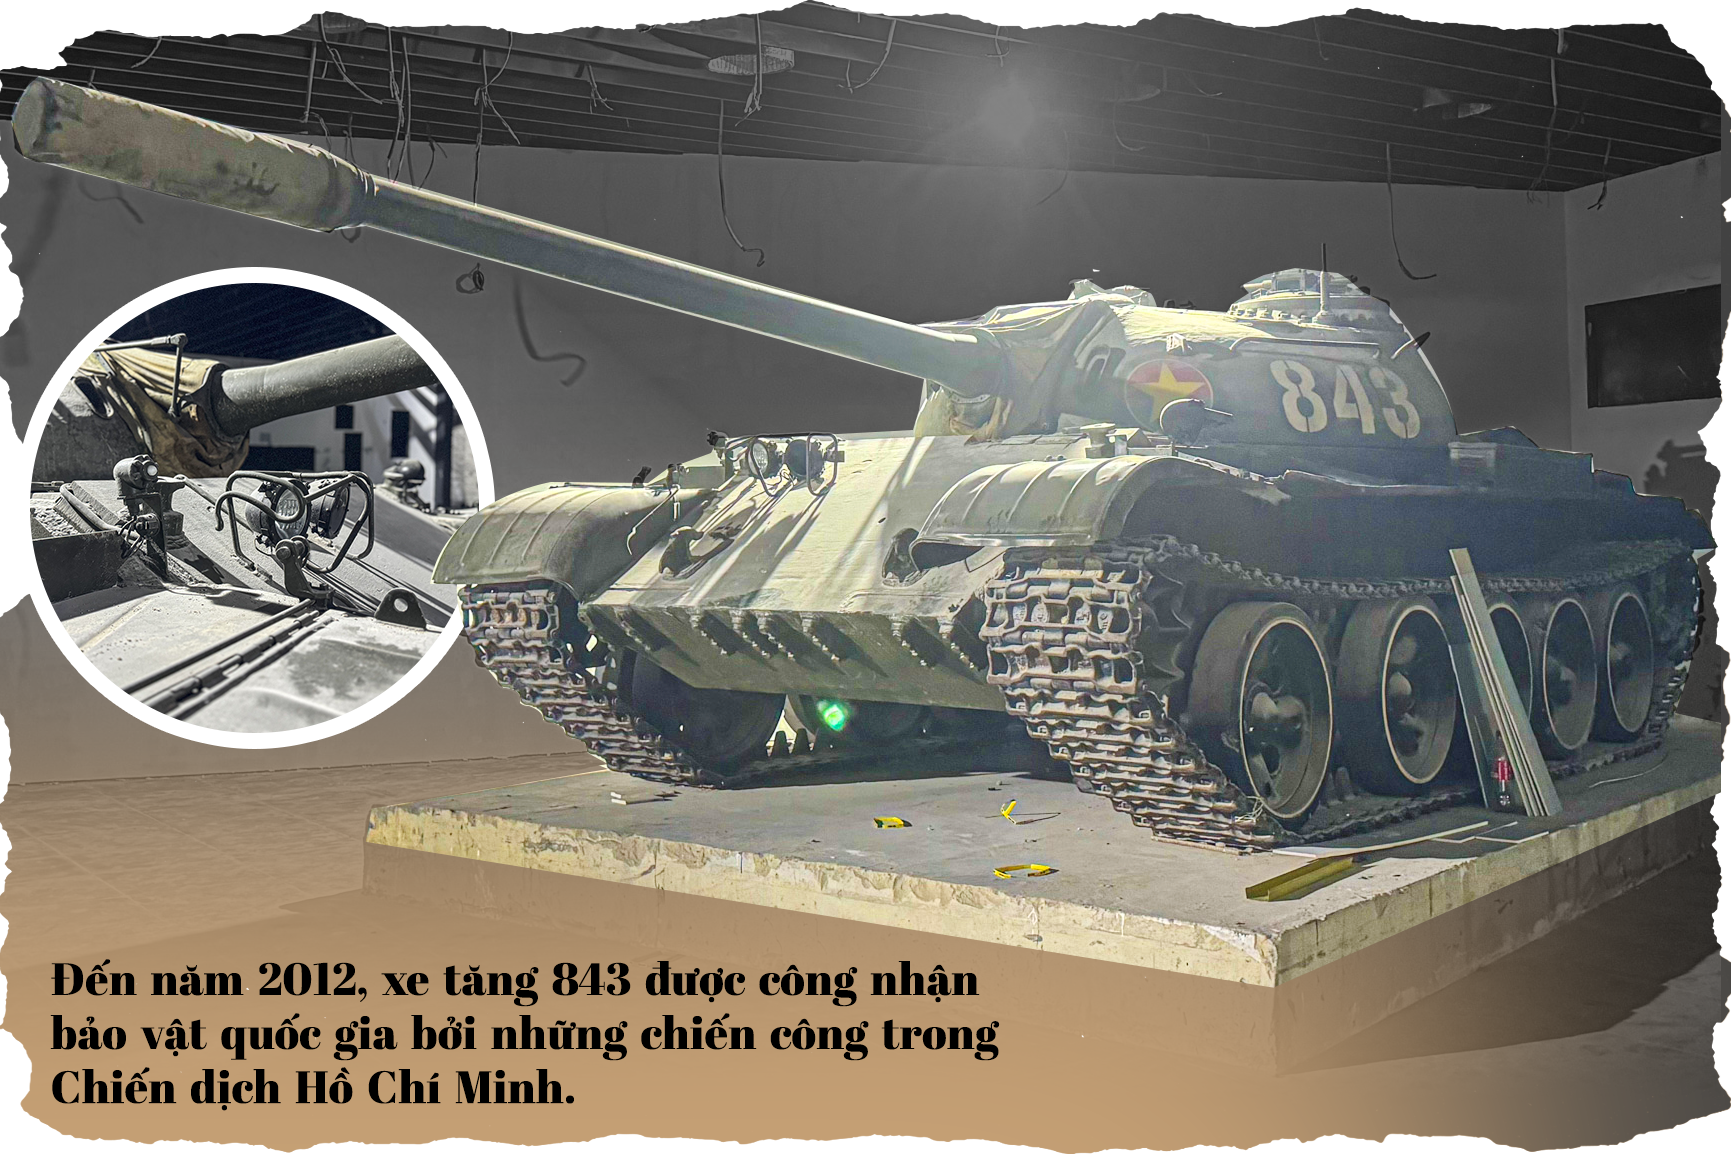 Điều đặc biệt về 4 bảo vật quốc gia trong bảo tàng quân sự lớn nhất Việt Nam - 6